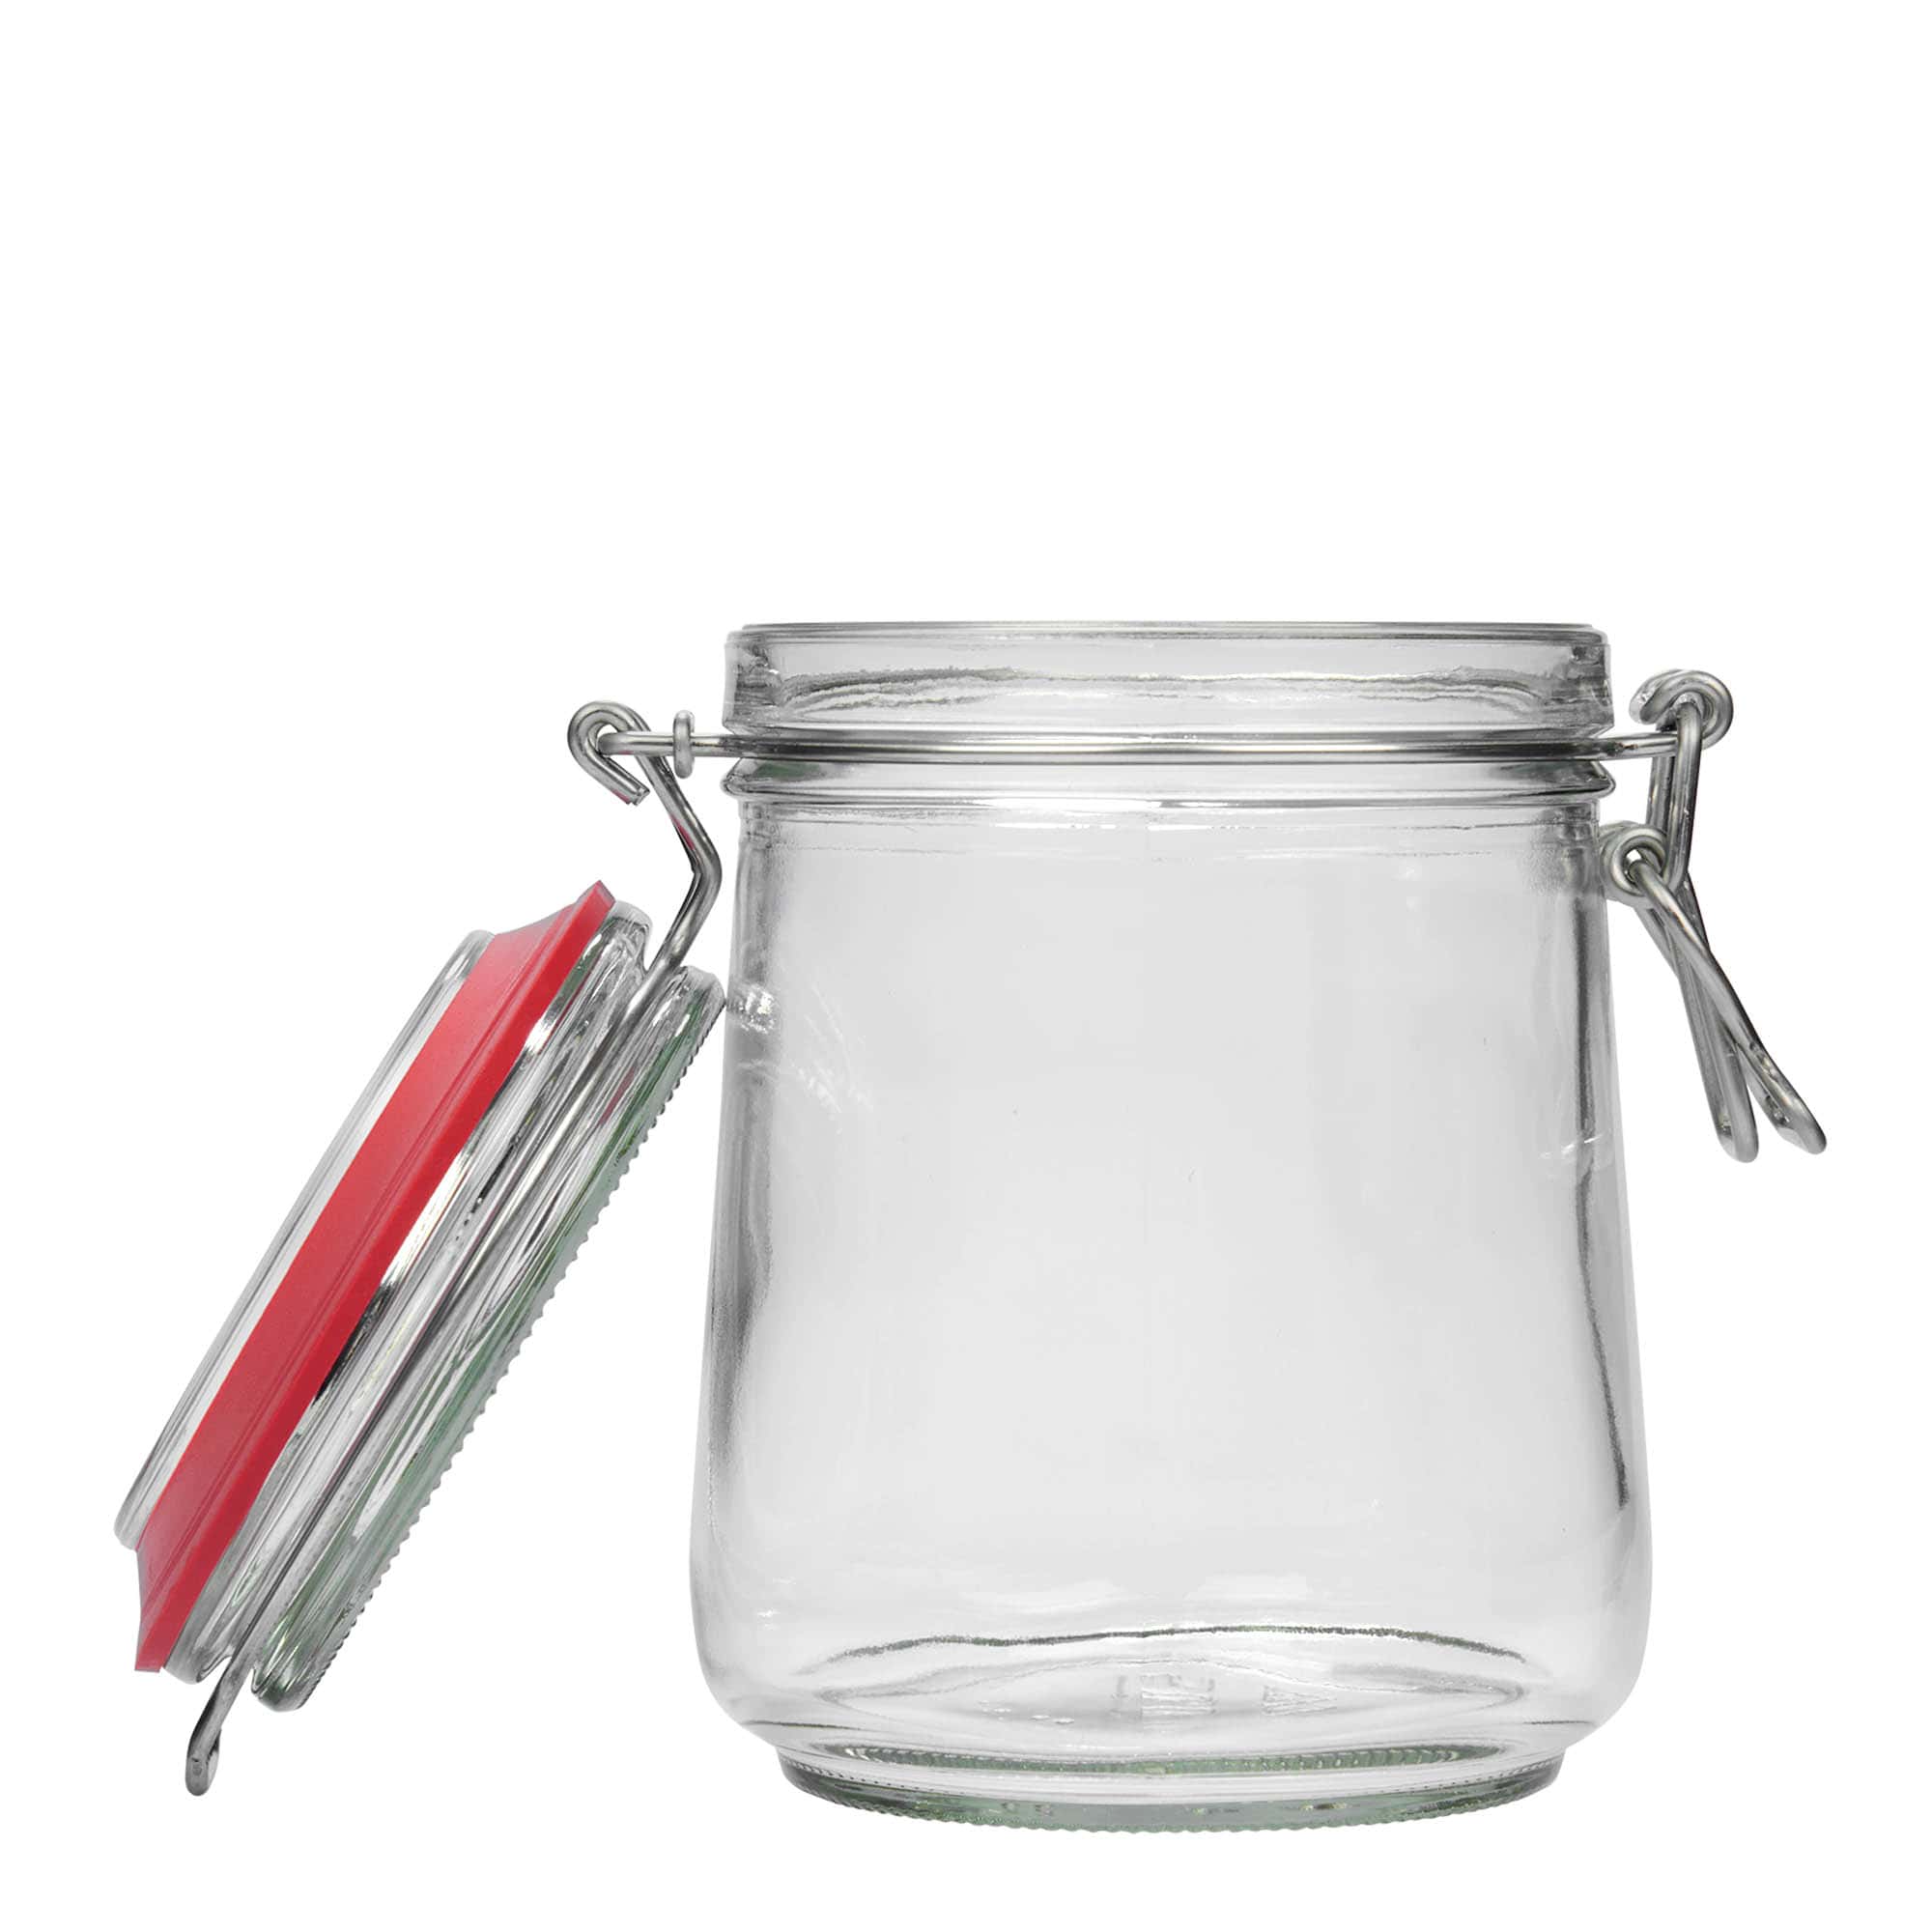 800 ml clip top jar, closure: clip top